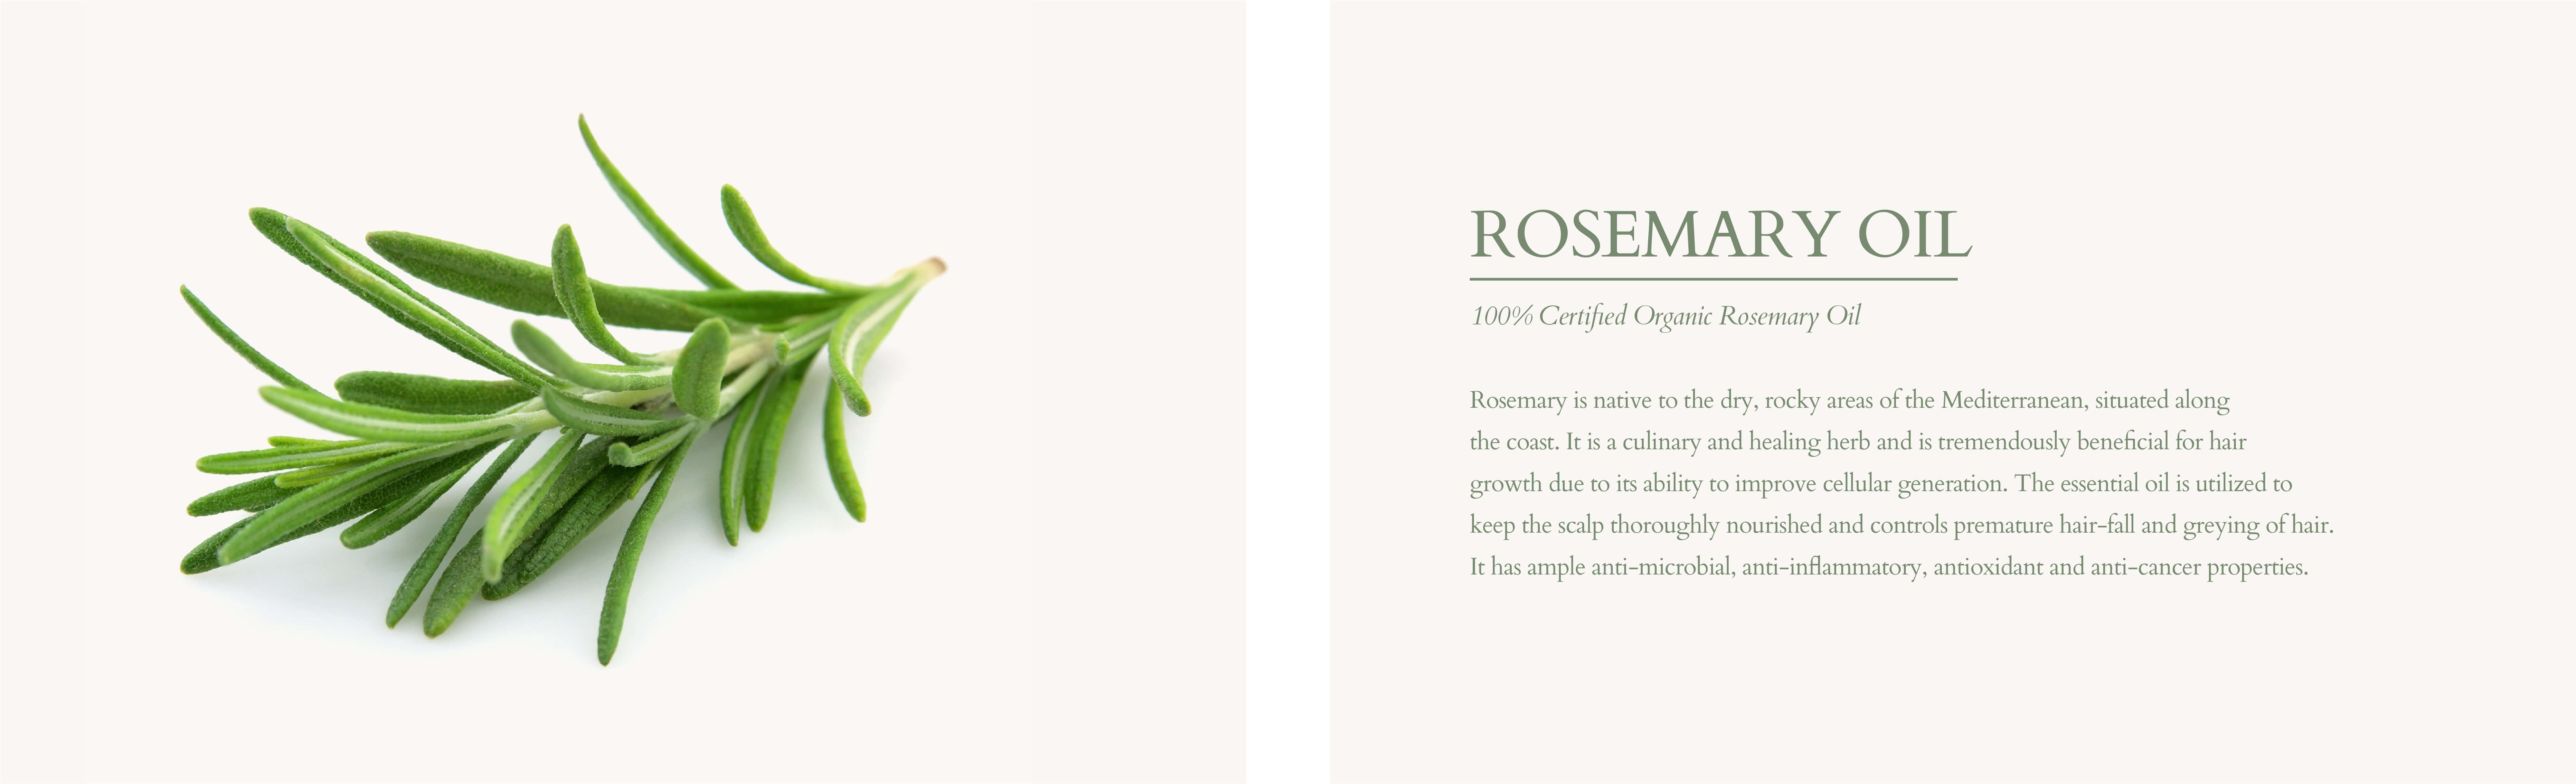 Organic rosemary oil for hair